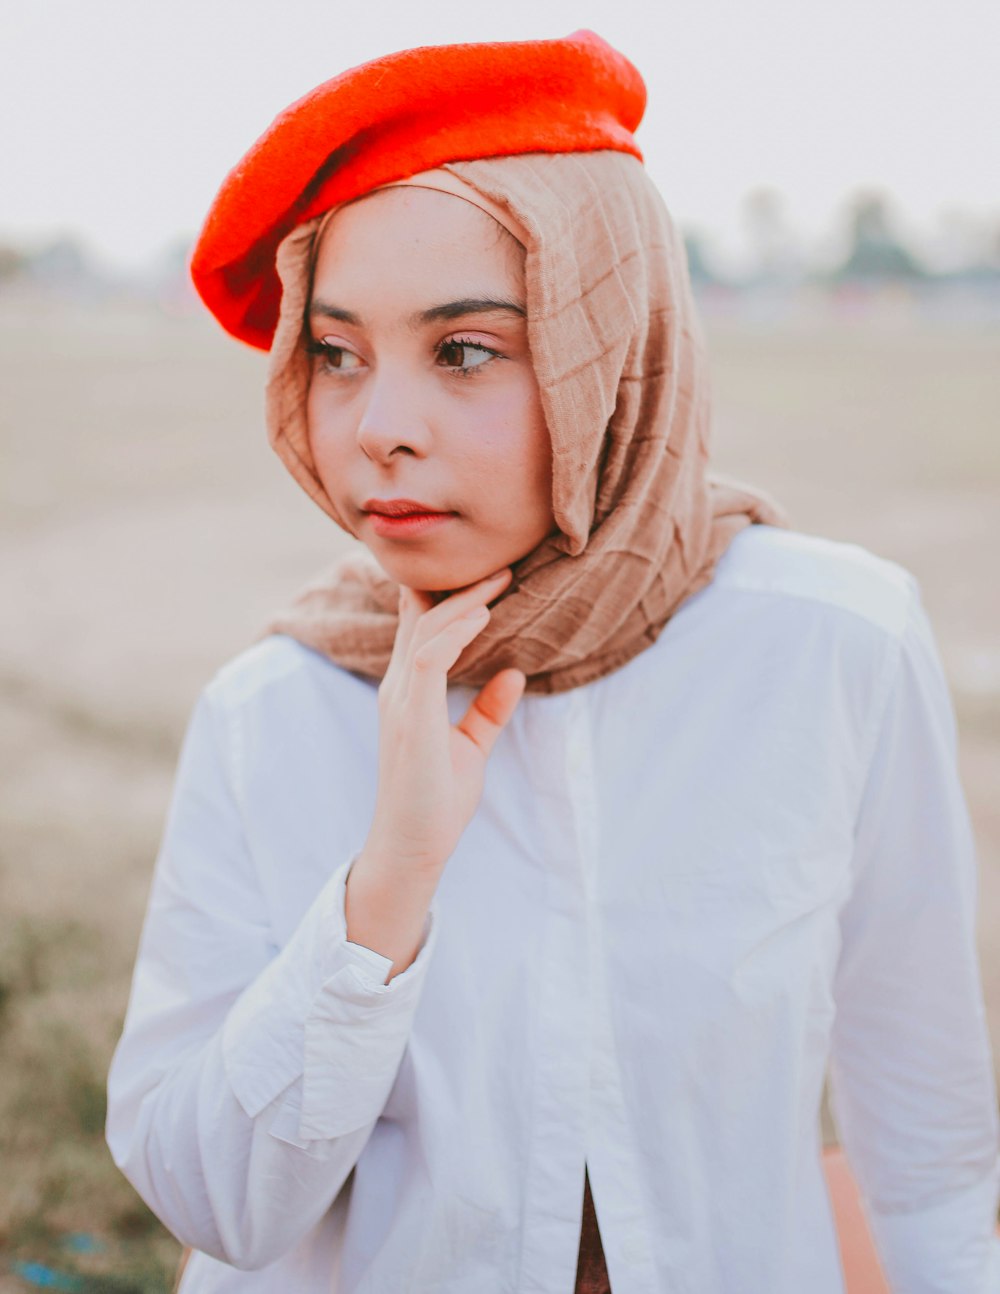 fotografia close-up da mulher usando hijab